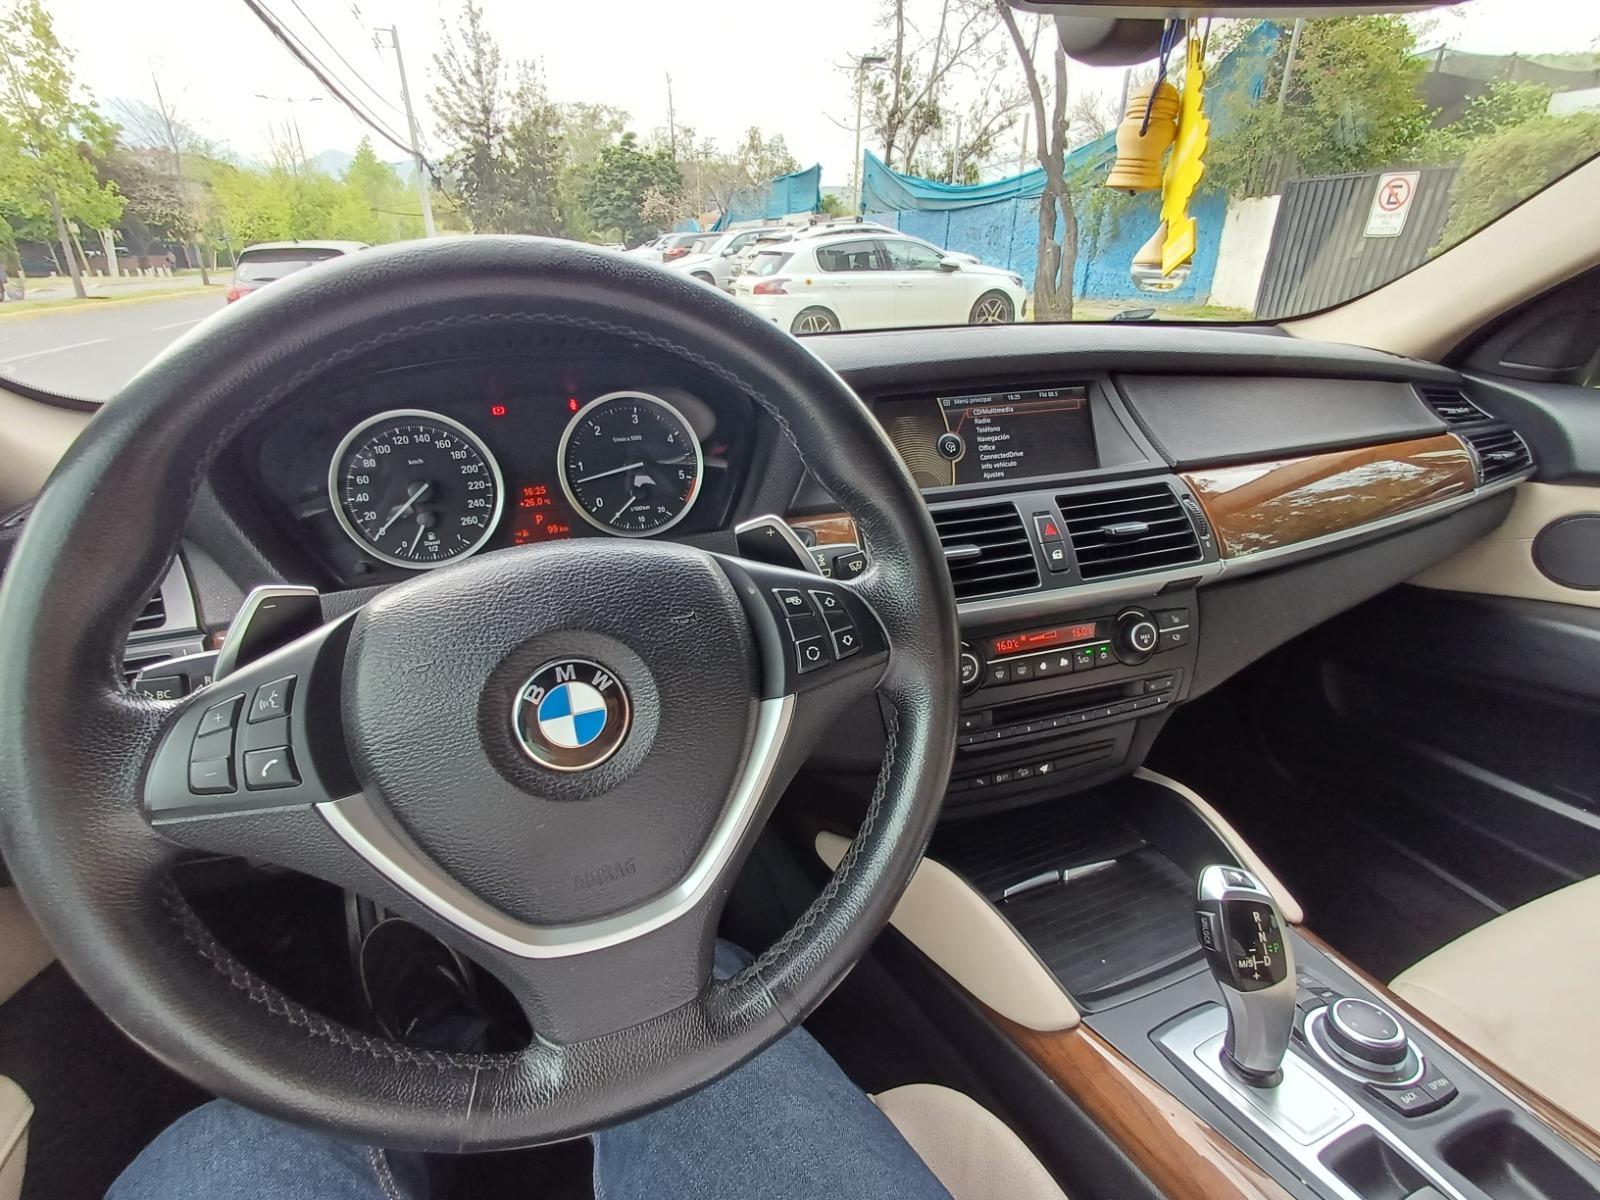 BMW X6 XDRIVE30D 3.0 AUT 2015 3.0 AUT DIESEL - FULL MOTOR